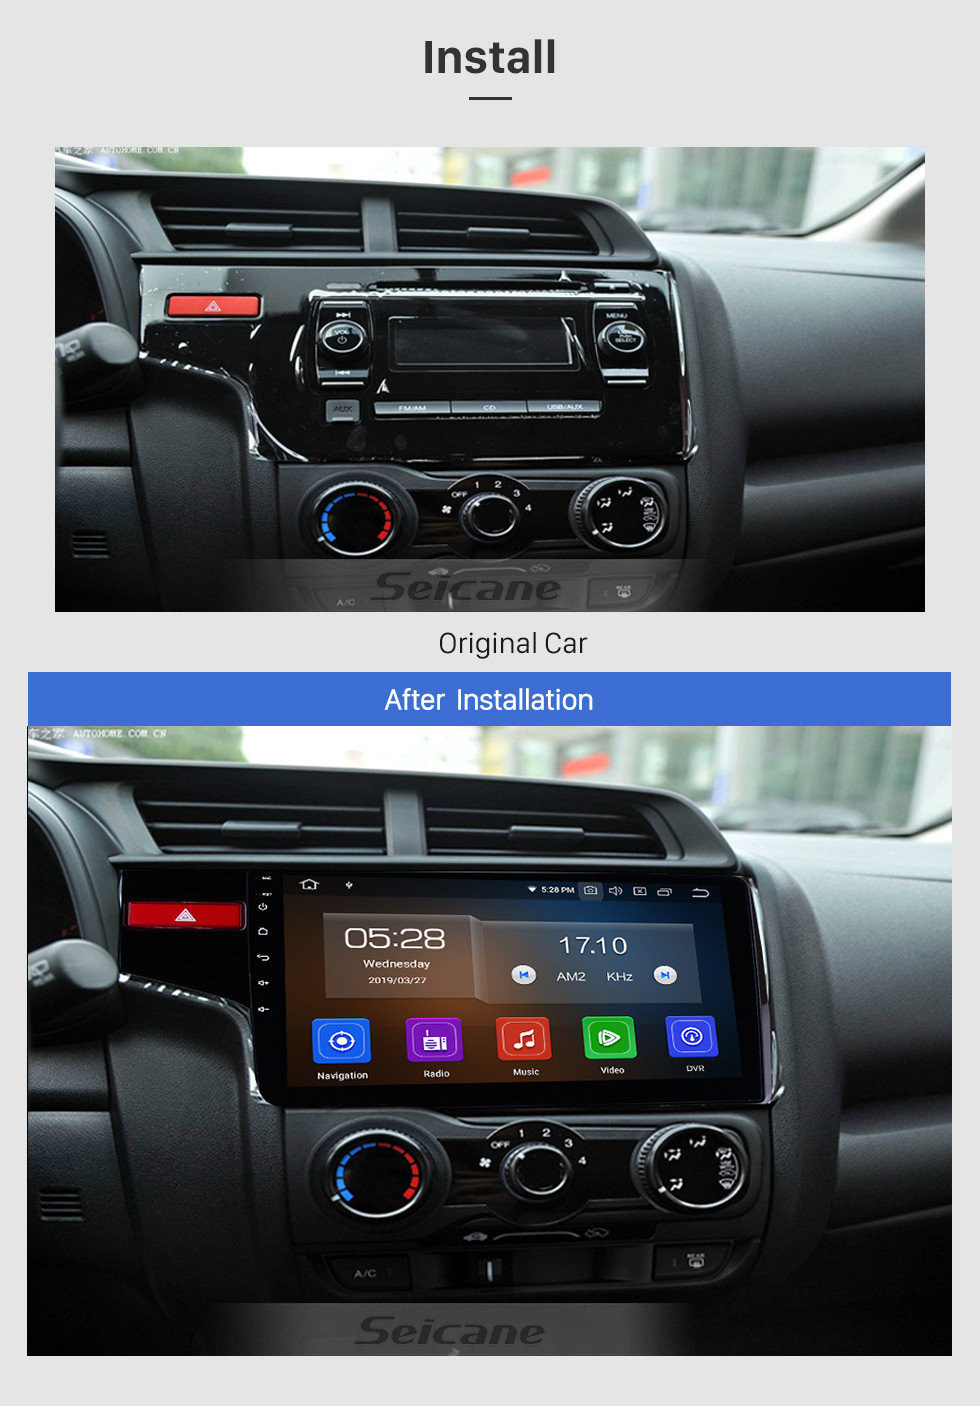 Seicane 10.1 pulgadas OEM Android 11.0 Radio Pantalla táctil capacitiva para 2014 2015 Honda FIT Soporte WiFi Bluetooth Sistema de navegación GPS TPMS DVR OBD II AUX Reposacabezas Monitor Control Video Cámara trasera USB SD